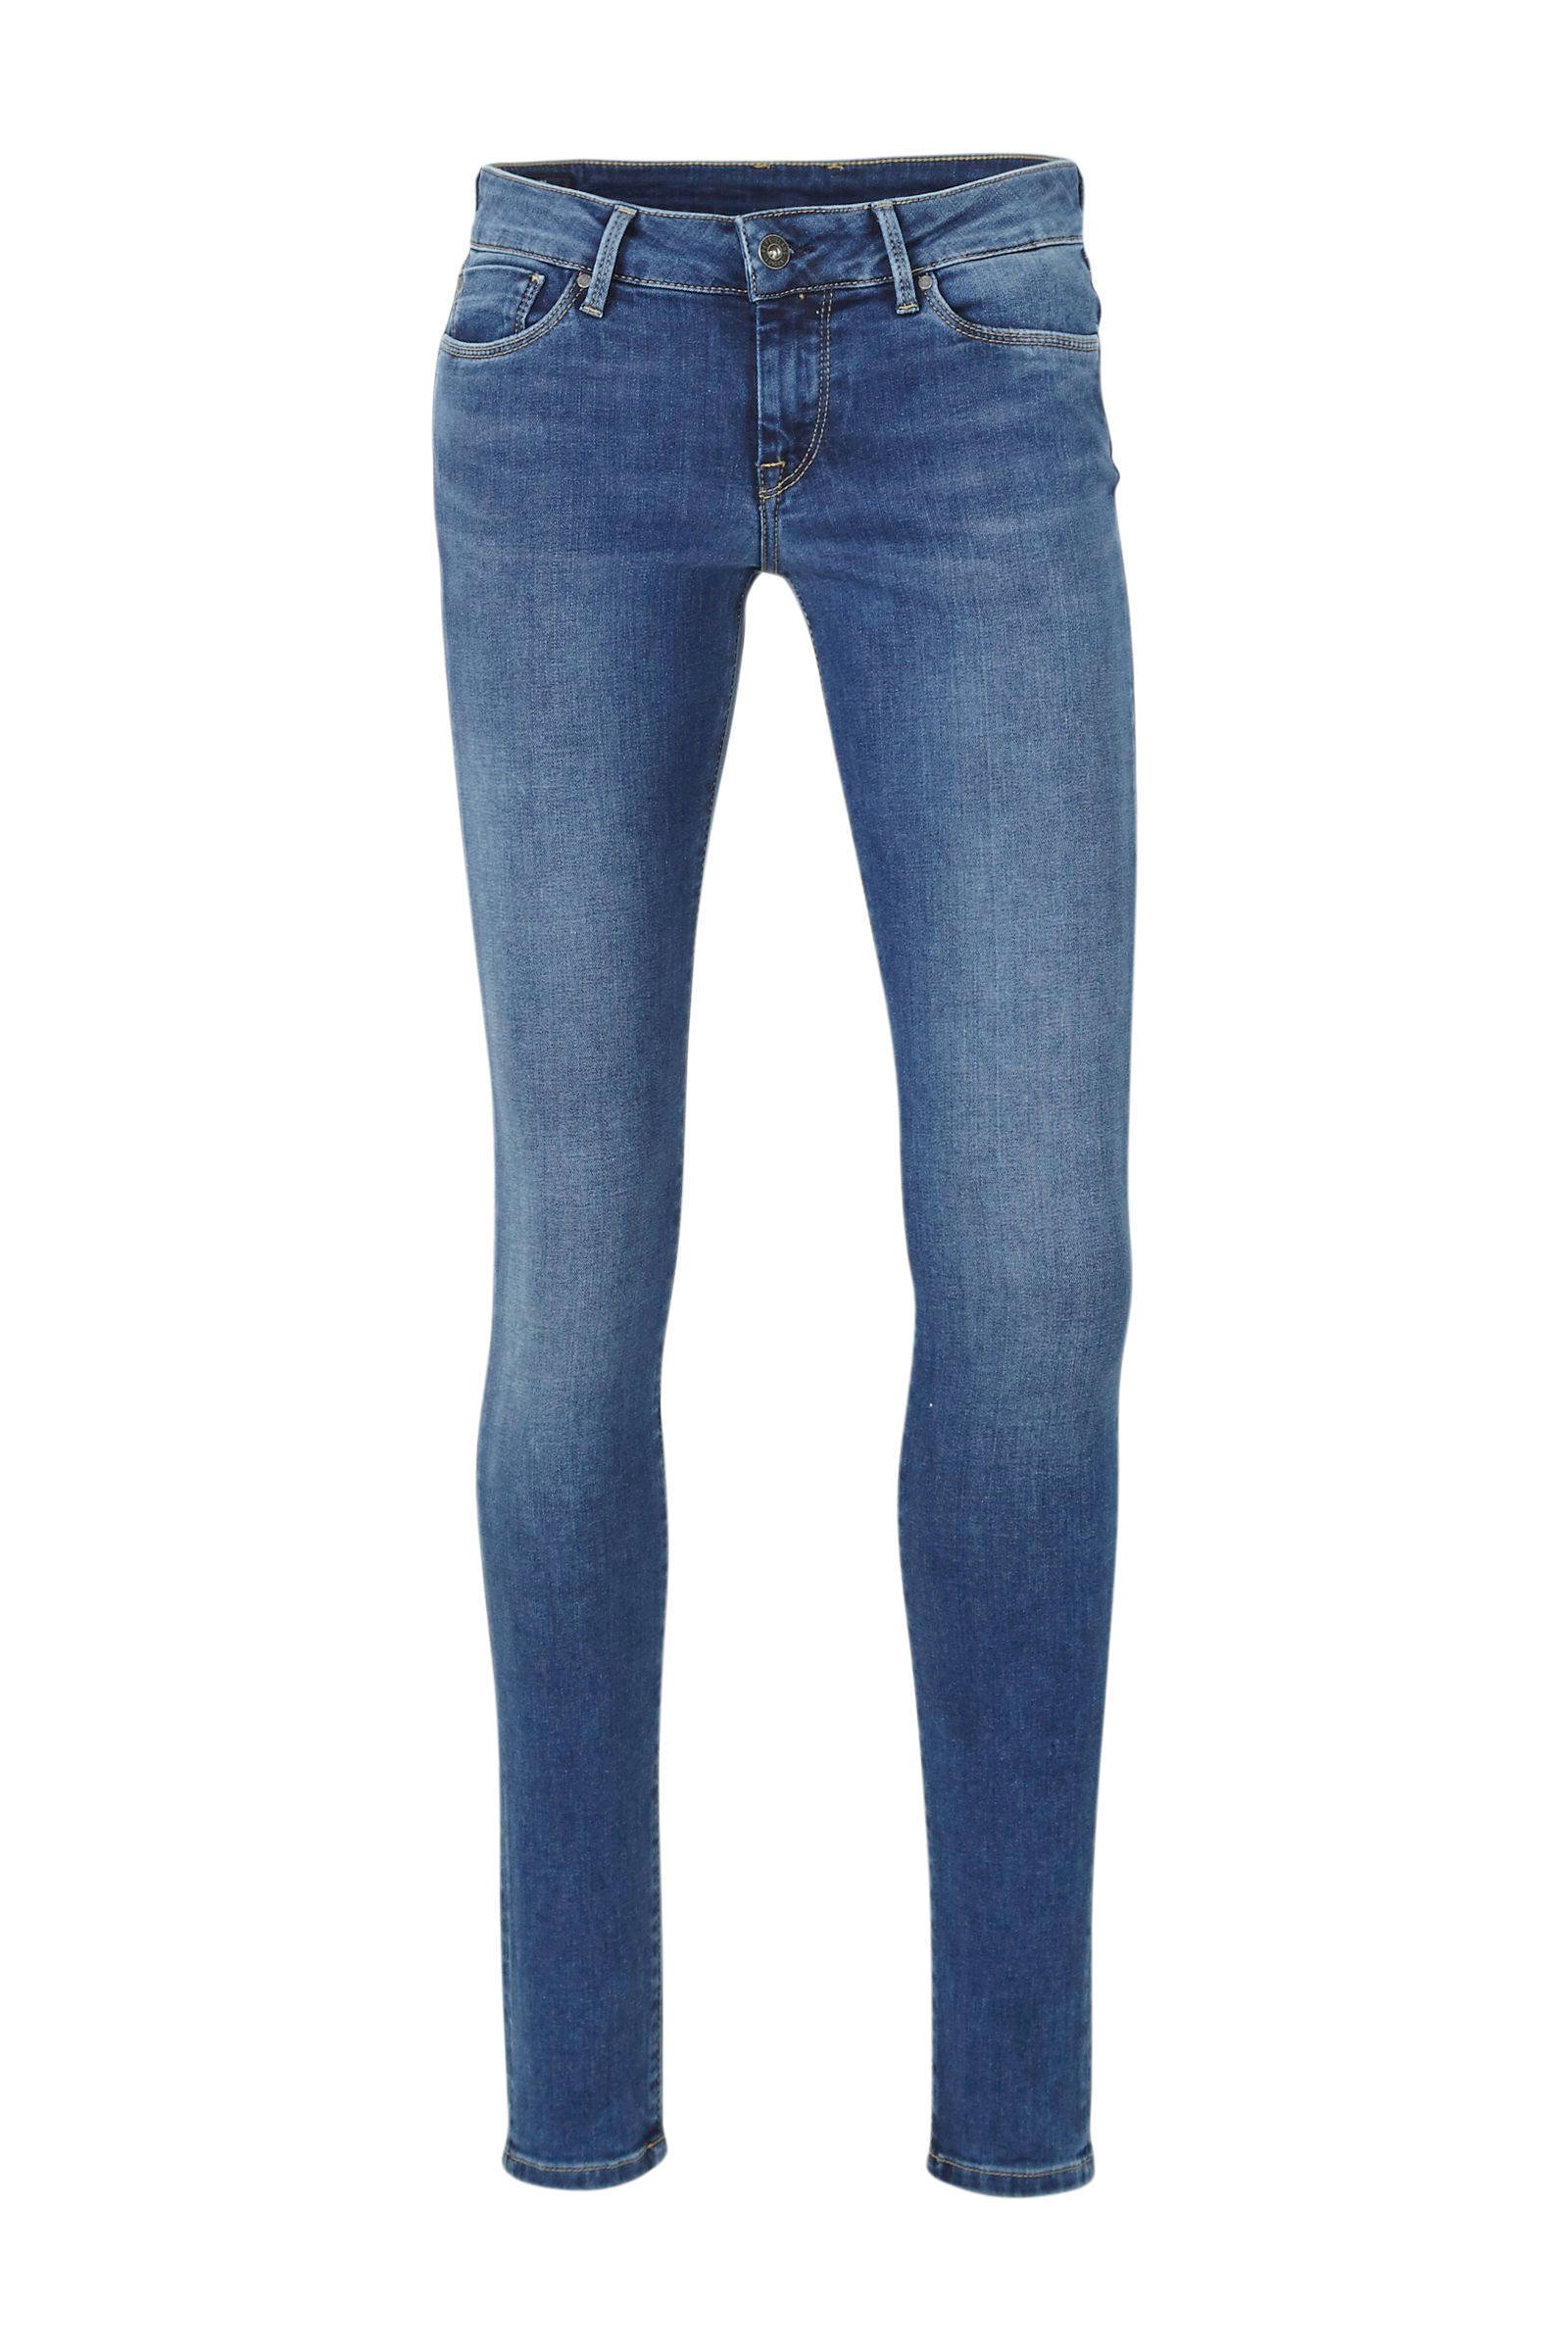 Pepe Jeans Denim Jeans Pl204177mg48 in het Blauw Dames Kleding voor voor Jeans voor Skinny jeans 